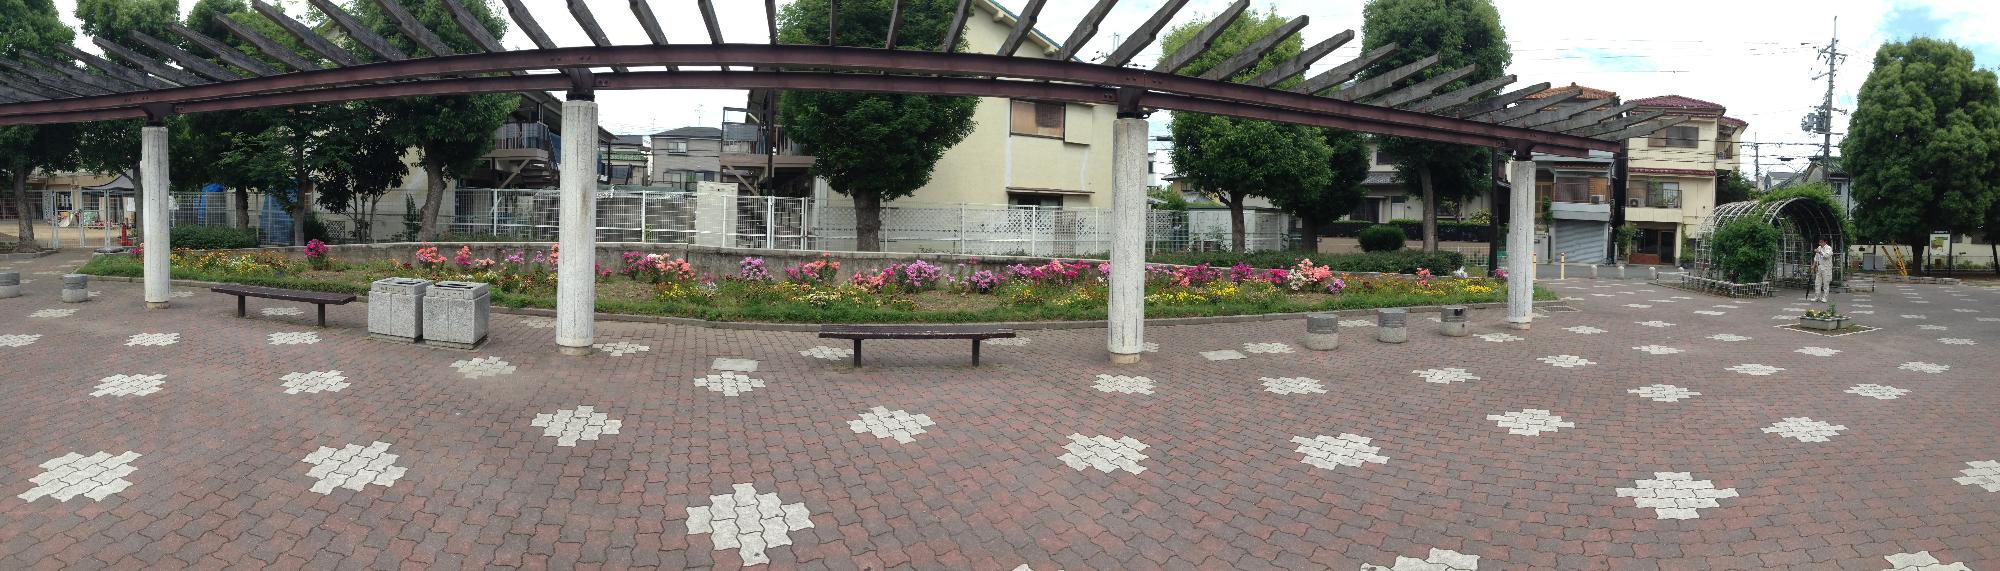 三島公園内花壇のパノラマ写真